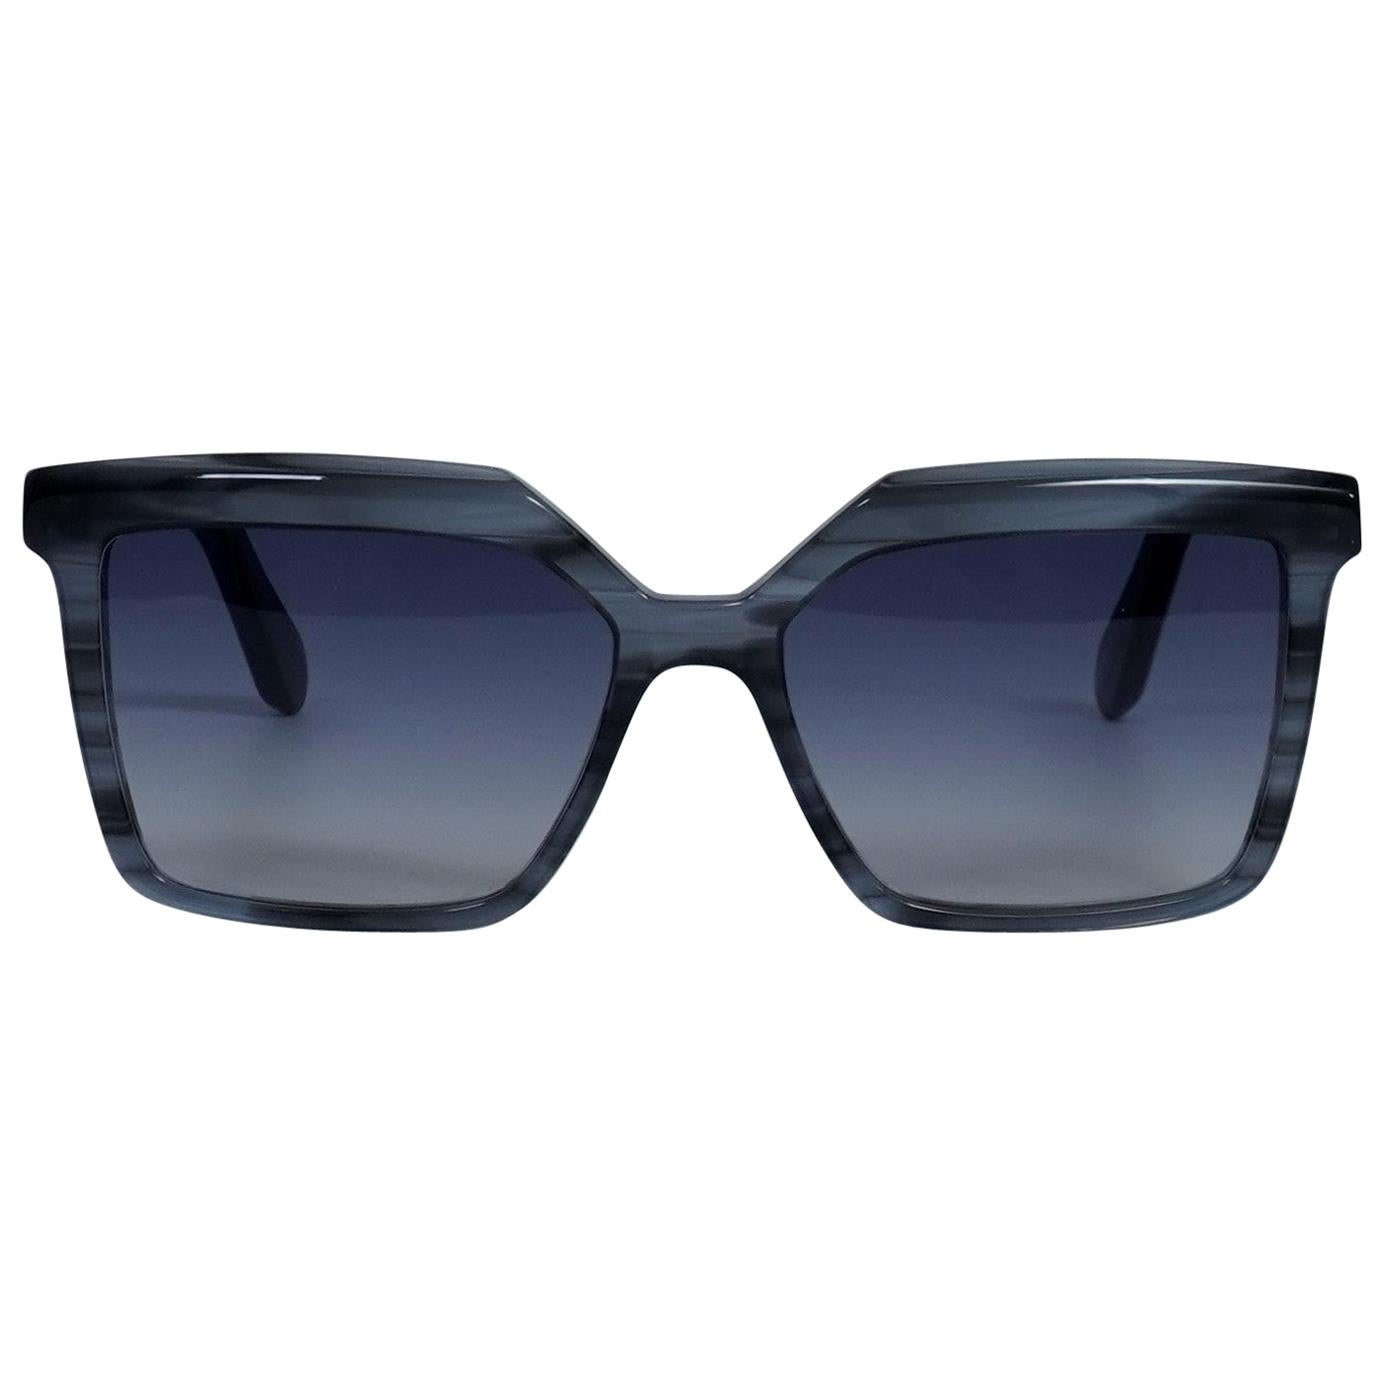 Aru Eyewear blue sunglasses